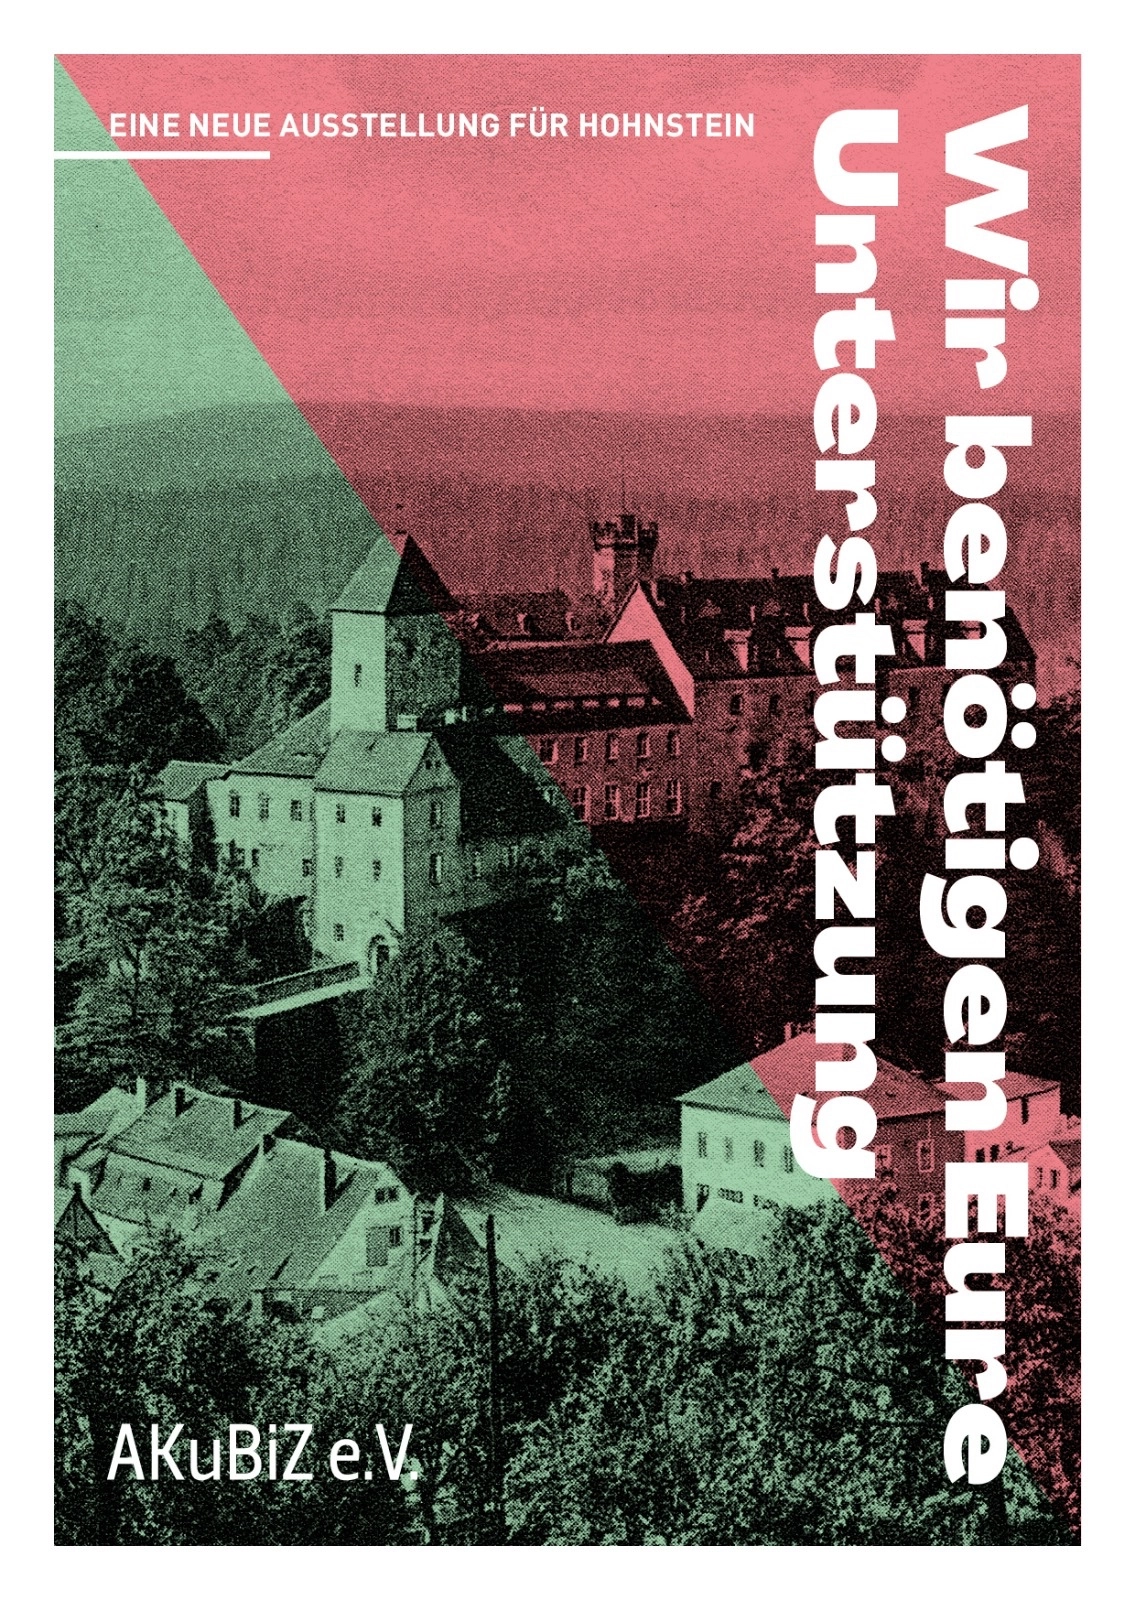 Wir benötigen eure Unterstützung für eine neue Ausstellung auf der Burg Hohnstein